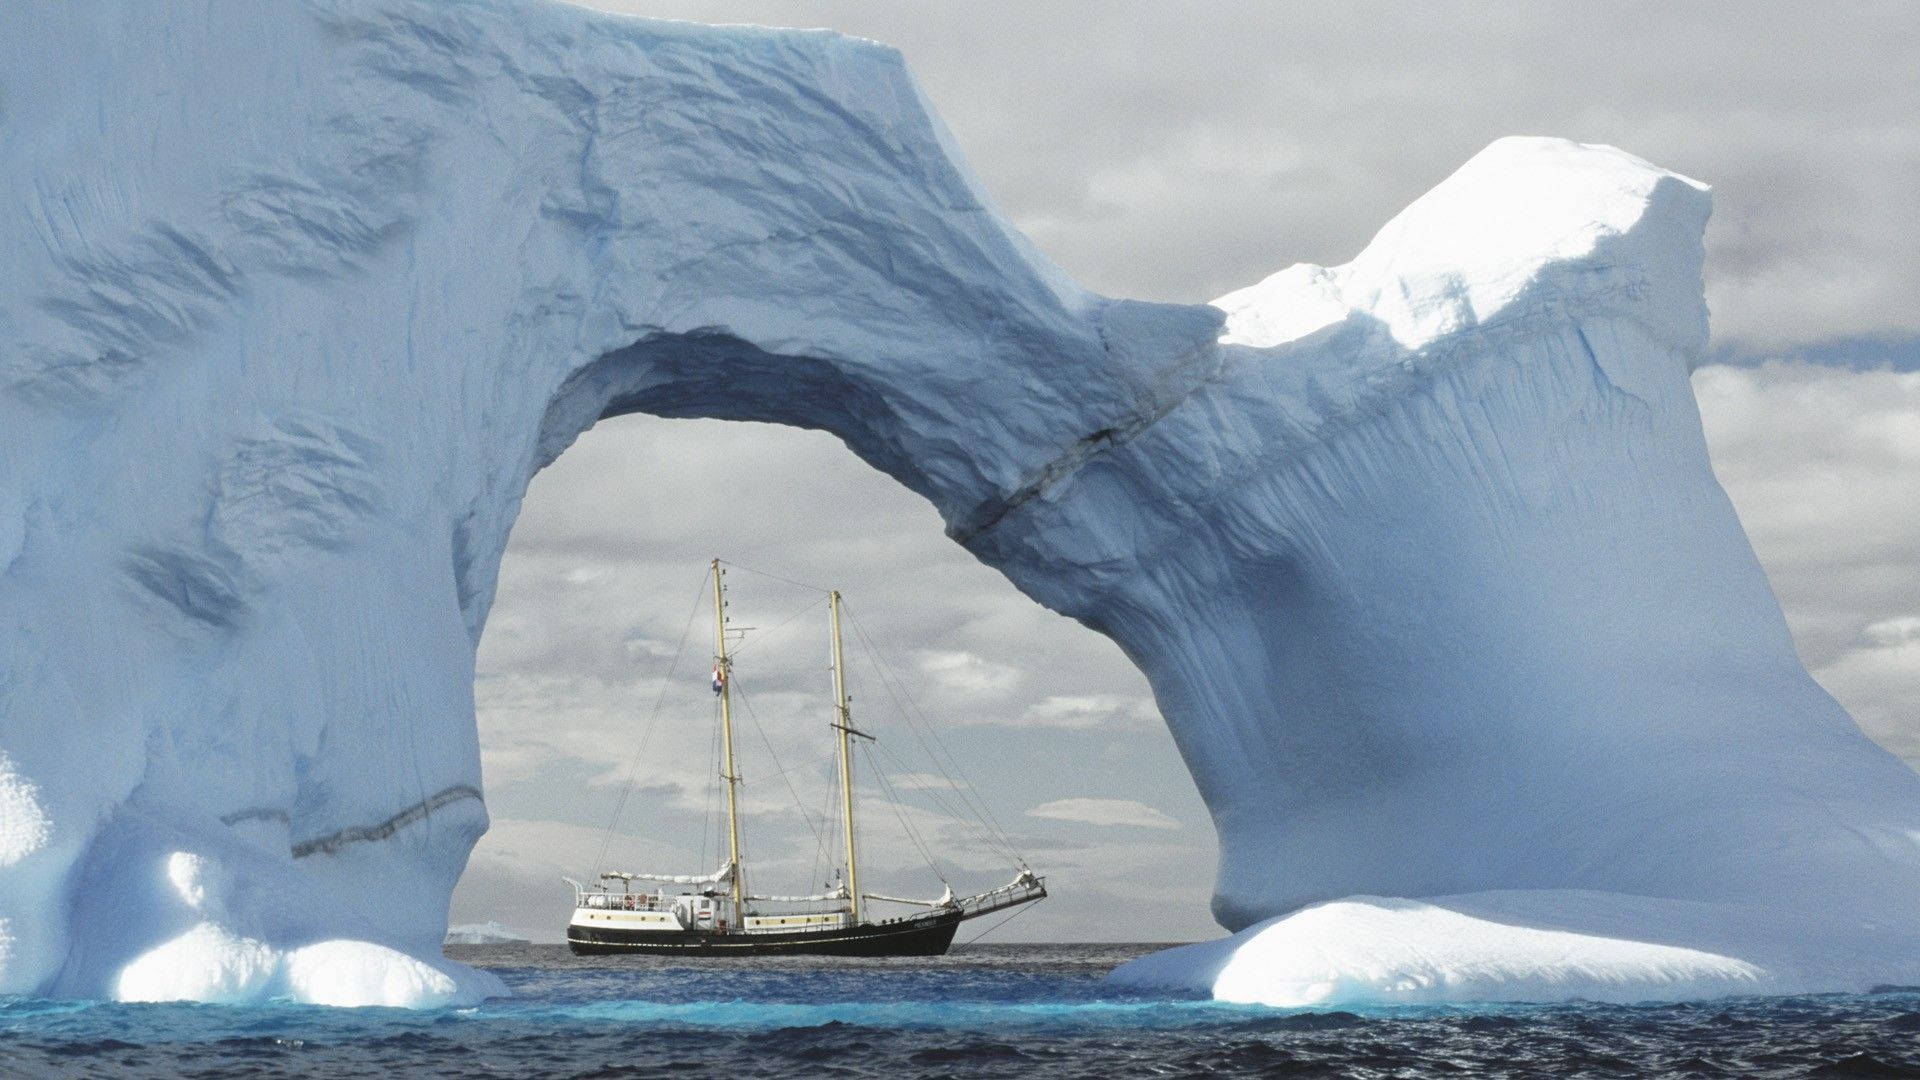 Antarctica Arch Glacier And Ship Background